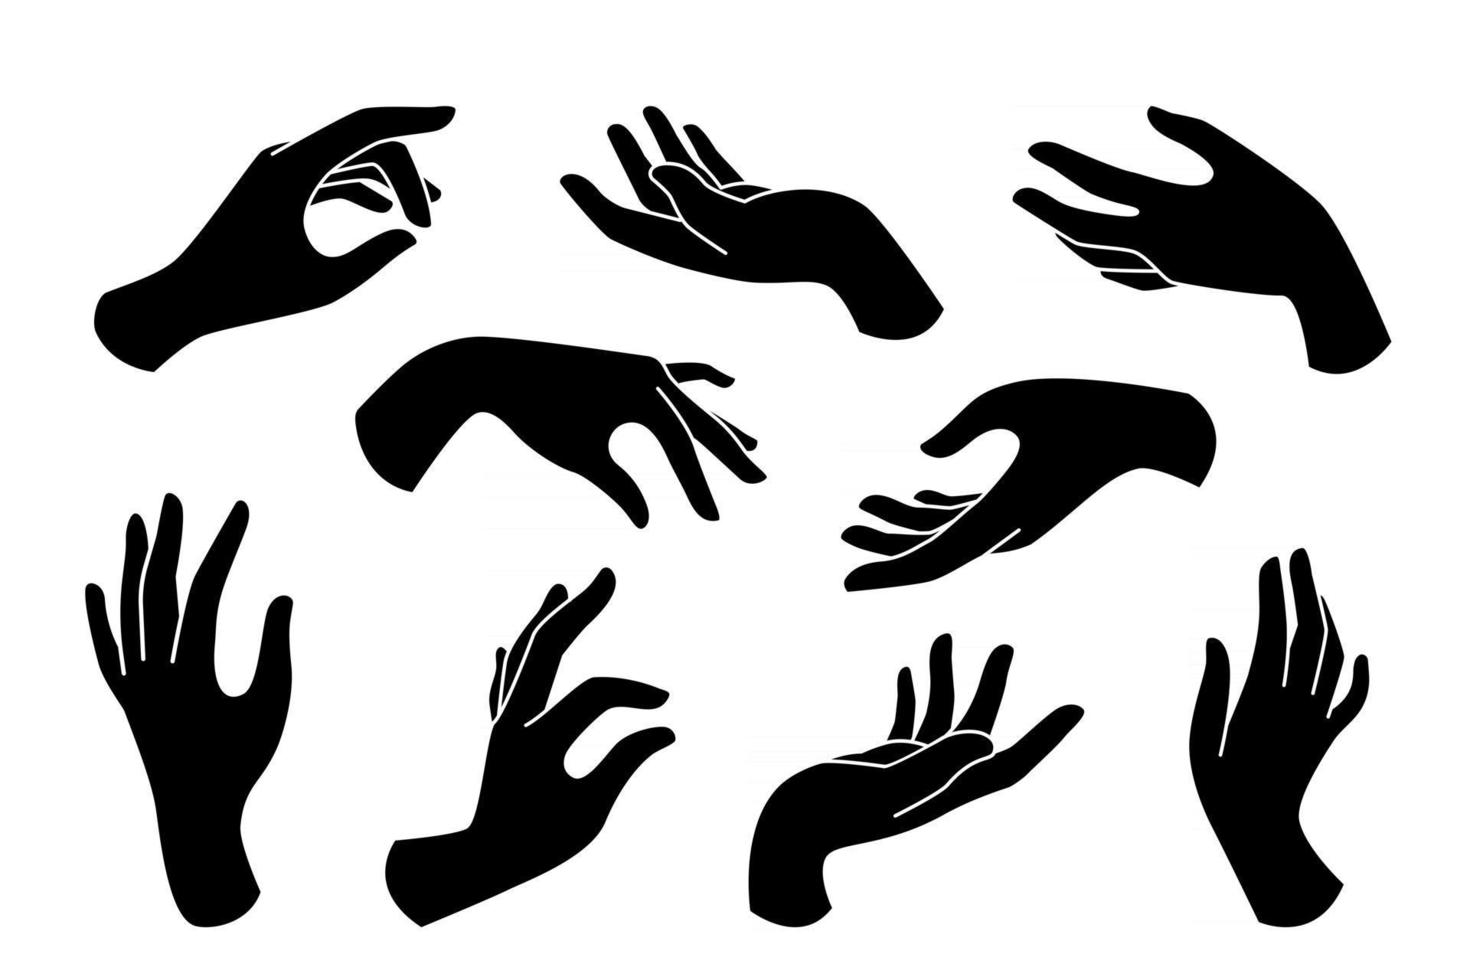 handritad boho uppsättning eleganta kvinnliga händer ikoner i siluett isolerad på vit bakgrund. samling av olika handgester. vektor platt illustration. design för kosmetika, smycken, manikyr